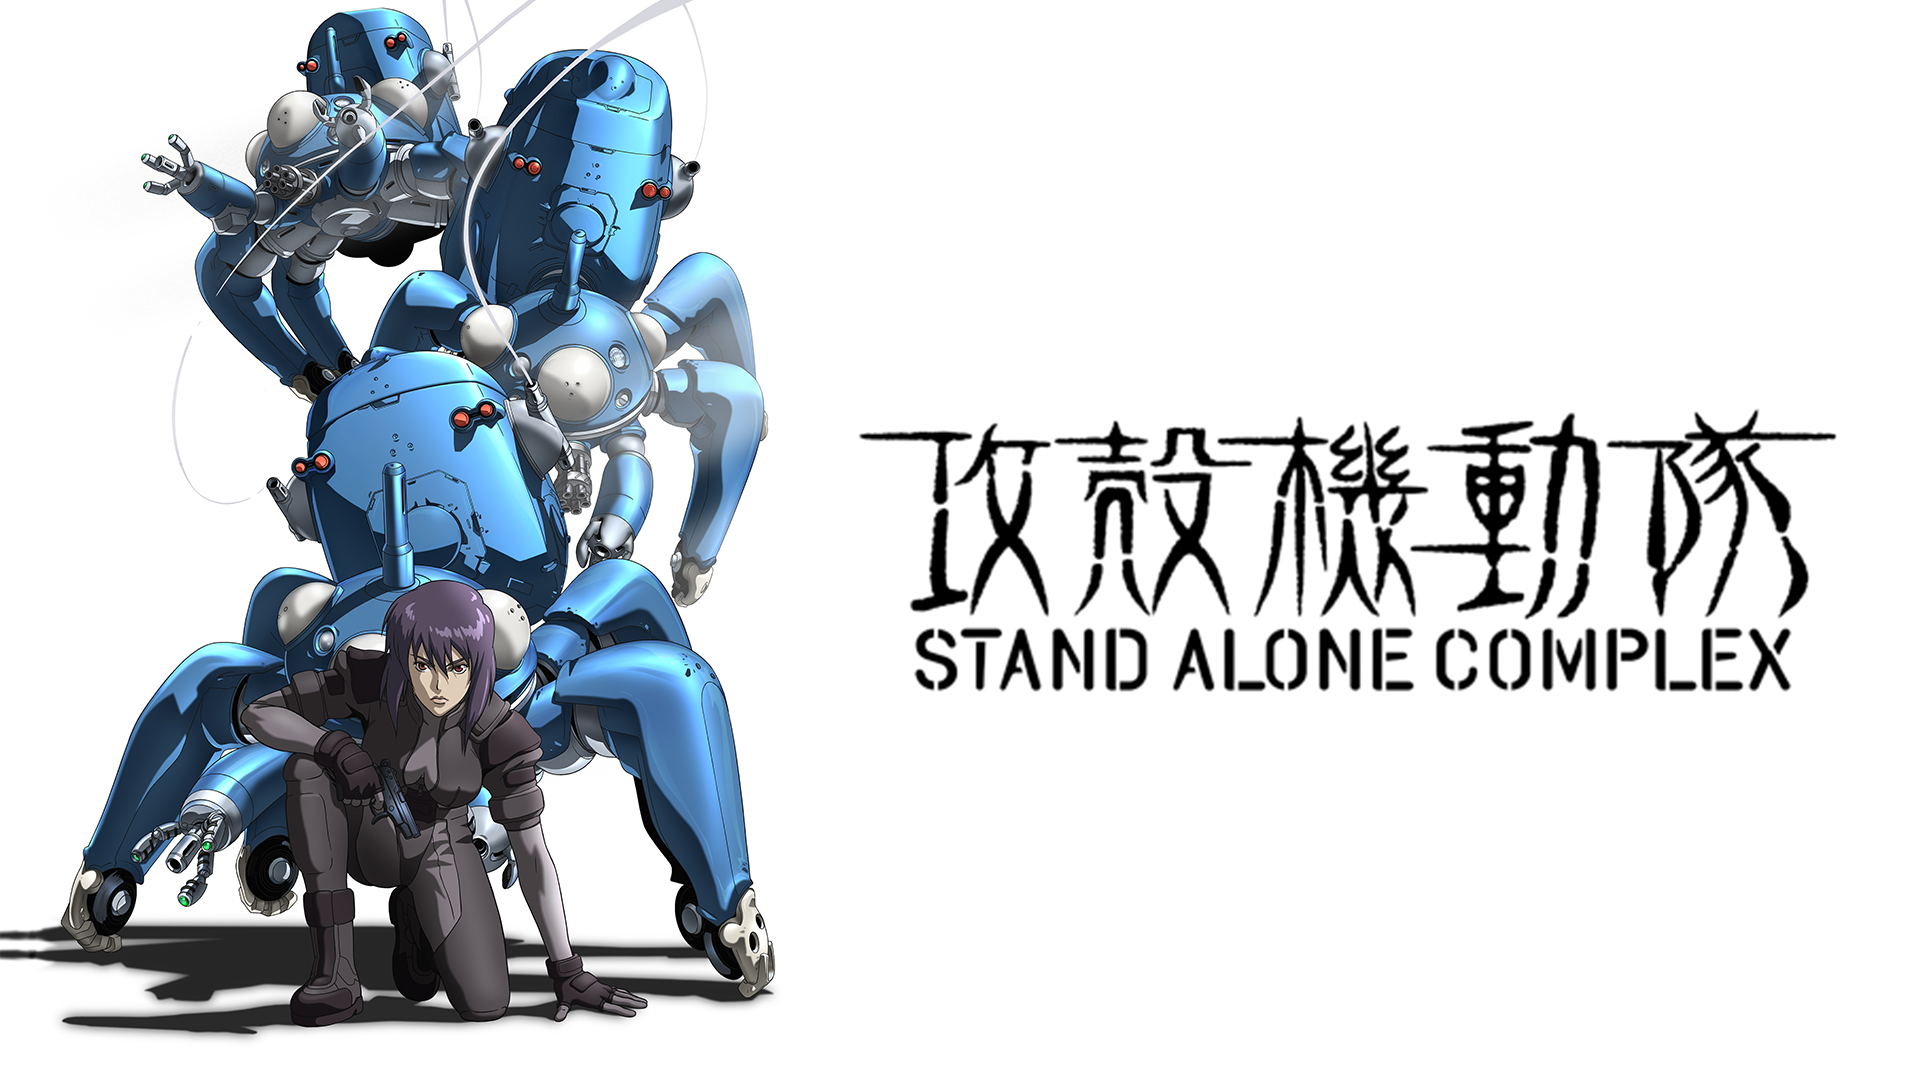 攻殻機動隊 Stand Alone Complexのアニメ動画を全話無料視聴できる配信サービスと方法まとめ Vodリッチ